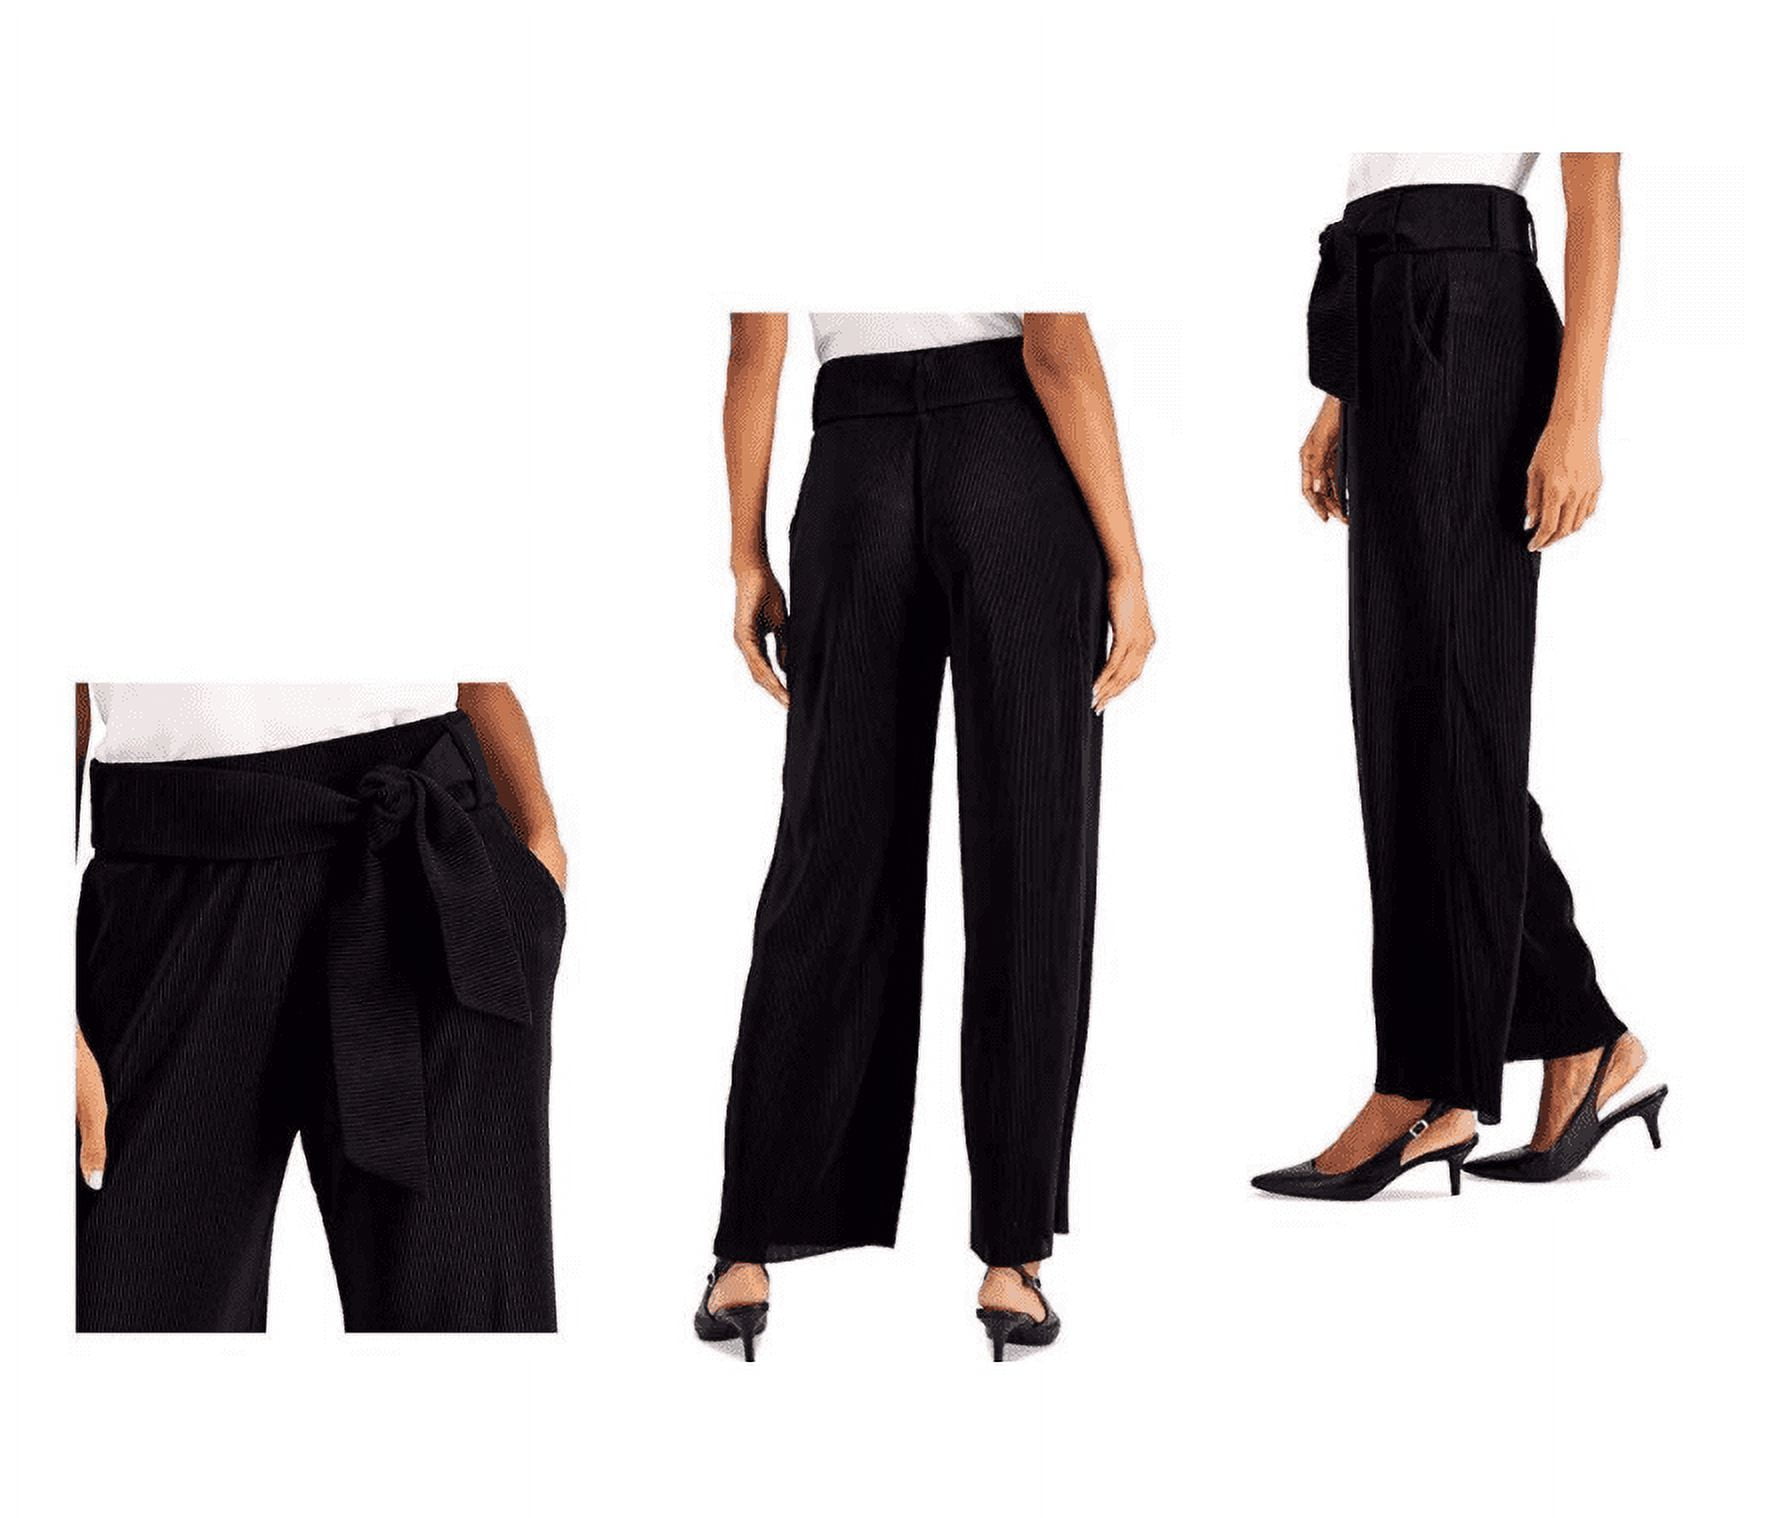 Women's Alfani Petite Black Wide Leg Dress Pants Slacks Size 4P